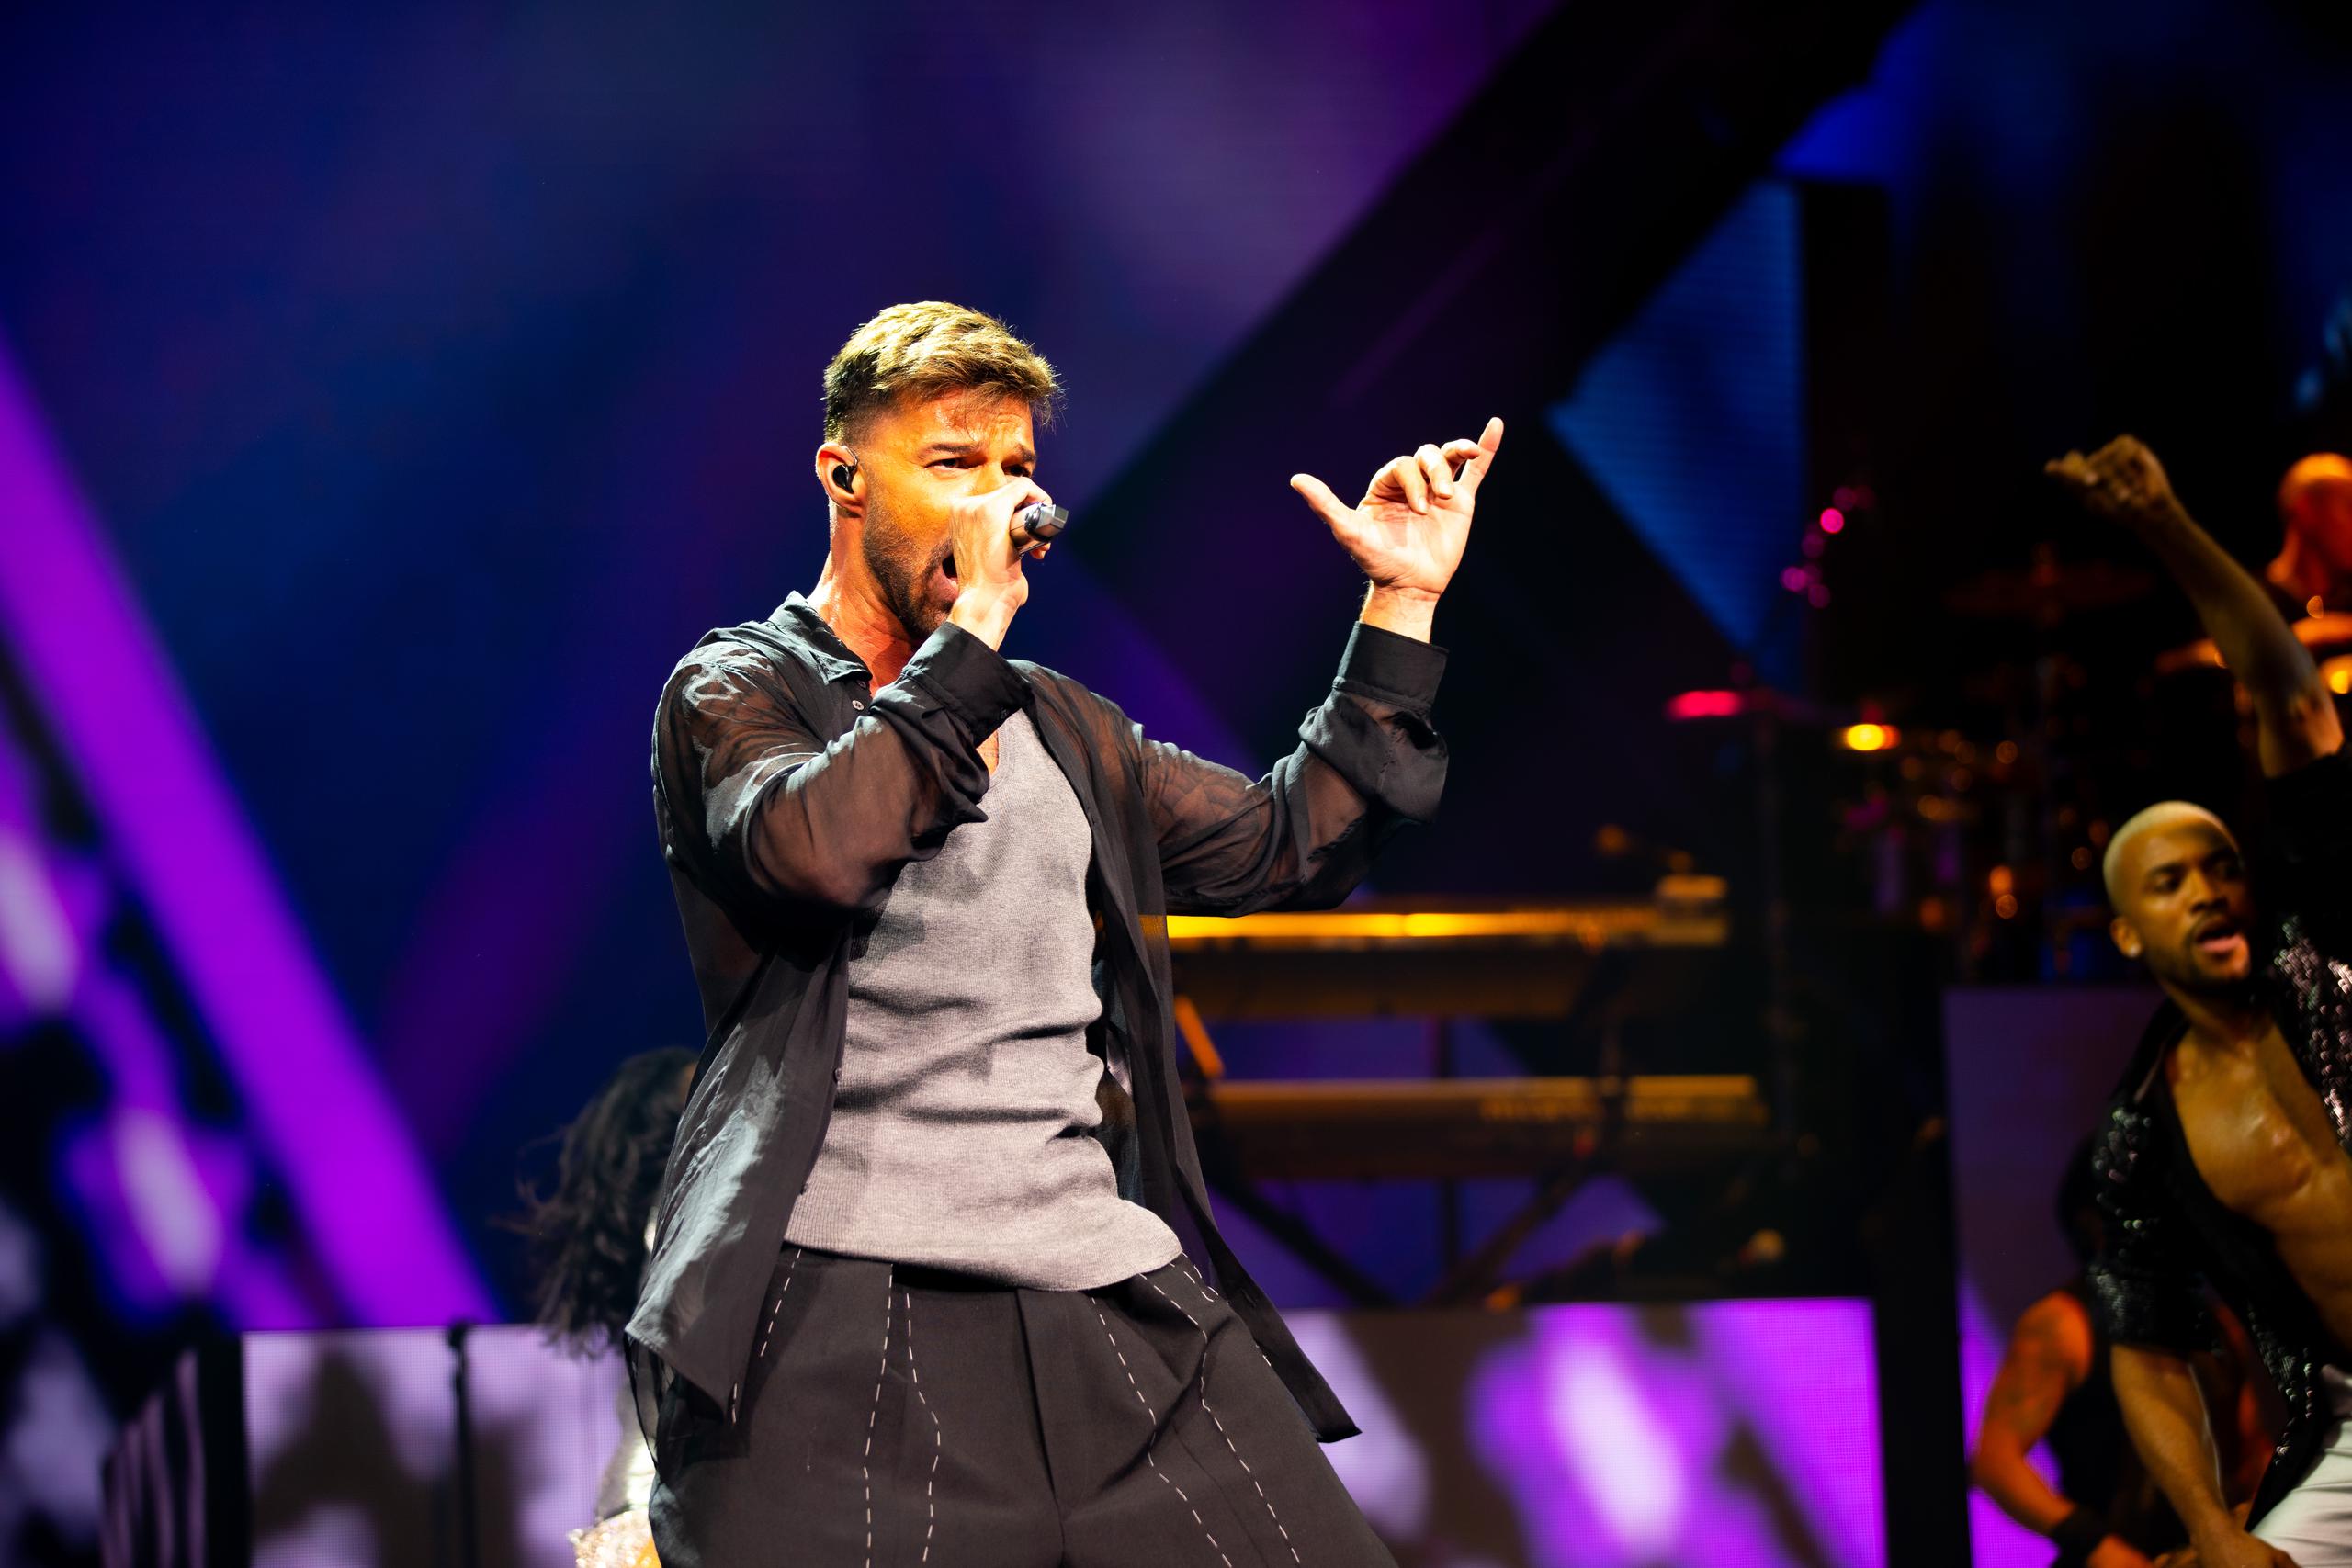 Ricky Martin se unió a Enrique Iglesias y Pitbull para dar la gira de conciertos "The Trilogy" por varias ciudades en Estados Unidos y Canadá.